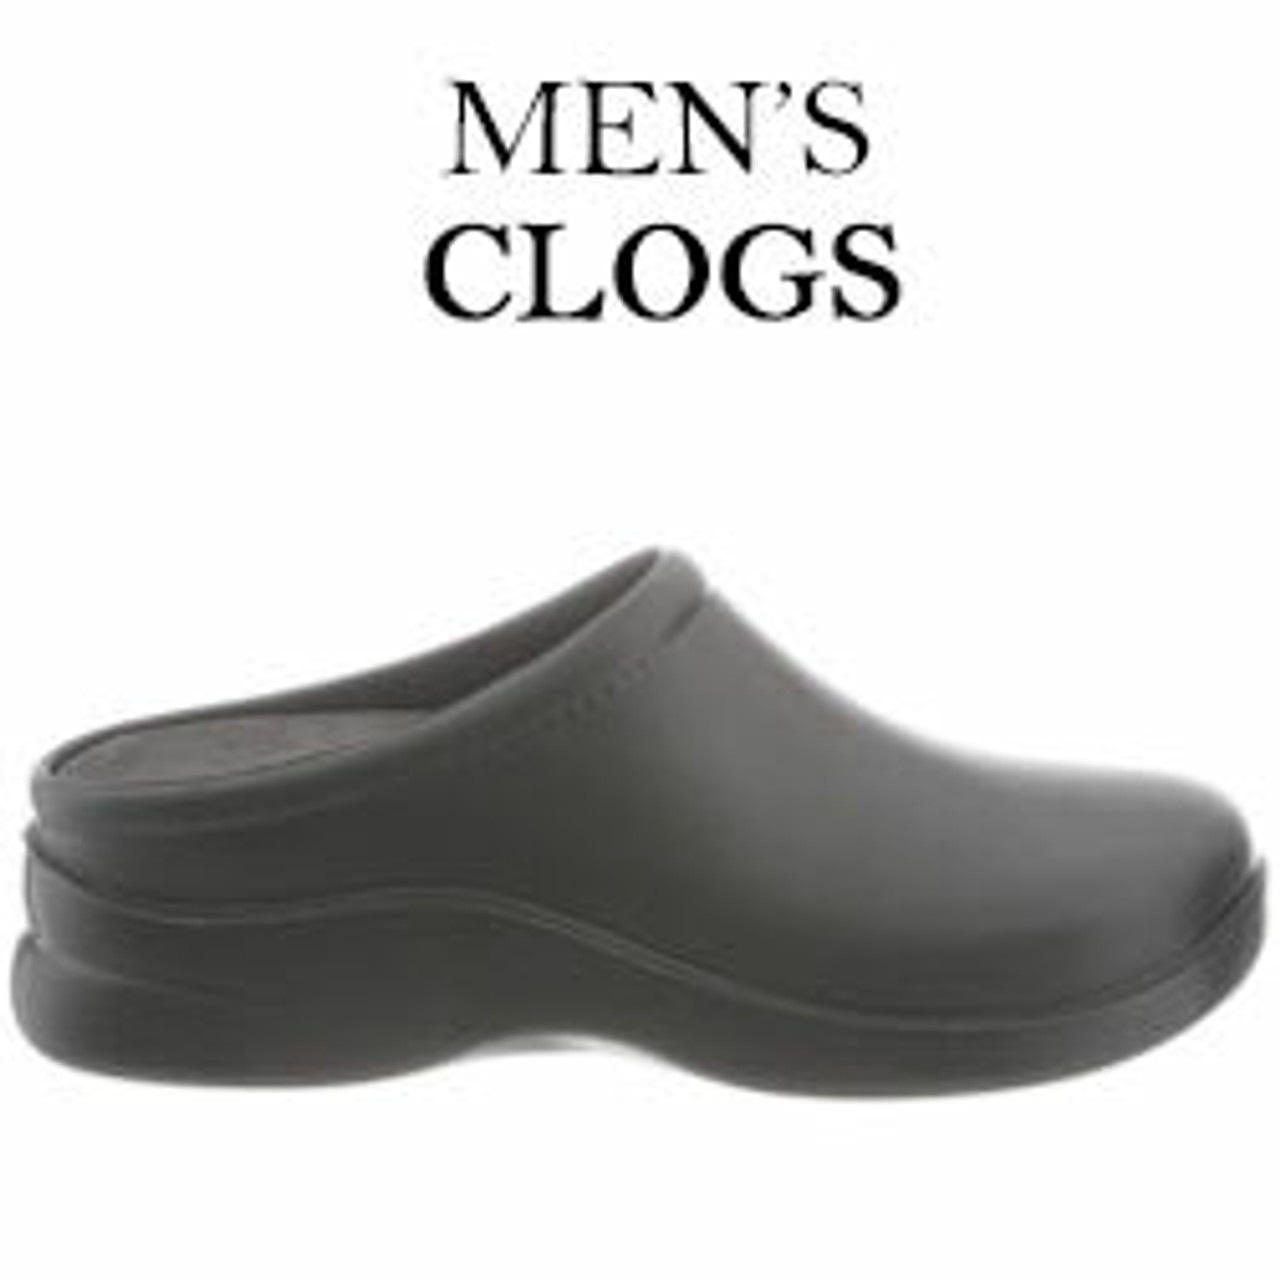 Mens Clogs | Clogs For Men